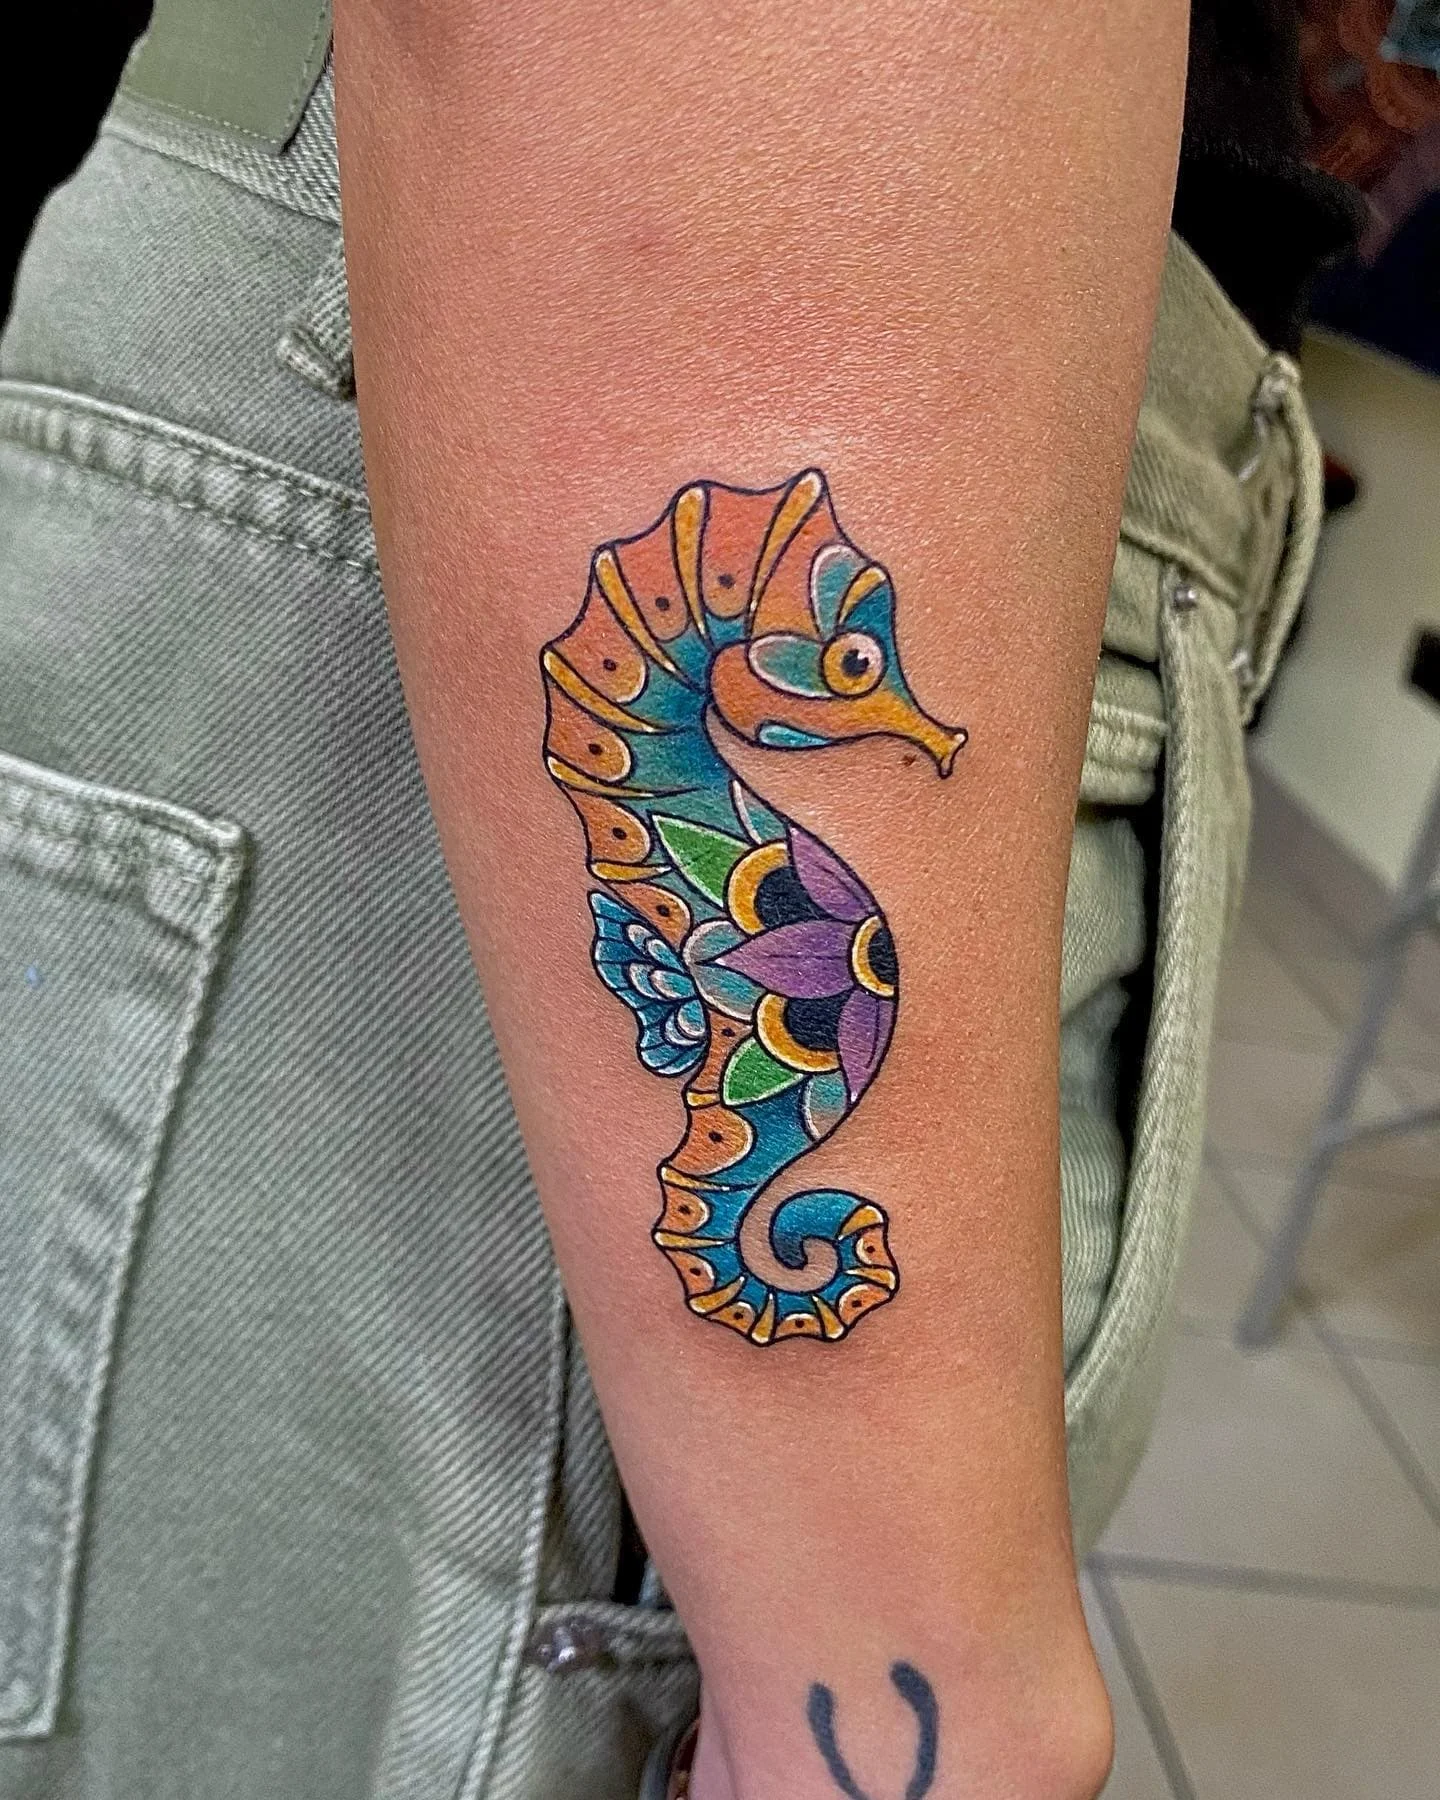 Seahorse tattoo ideas 2